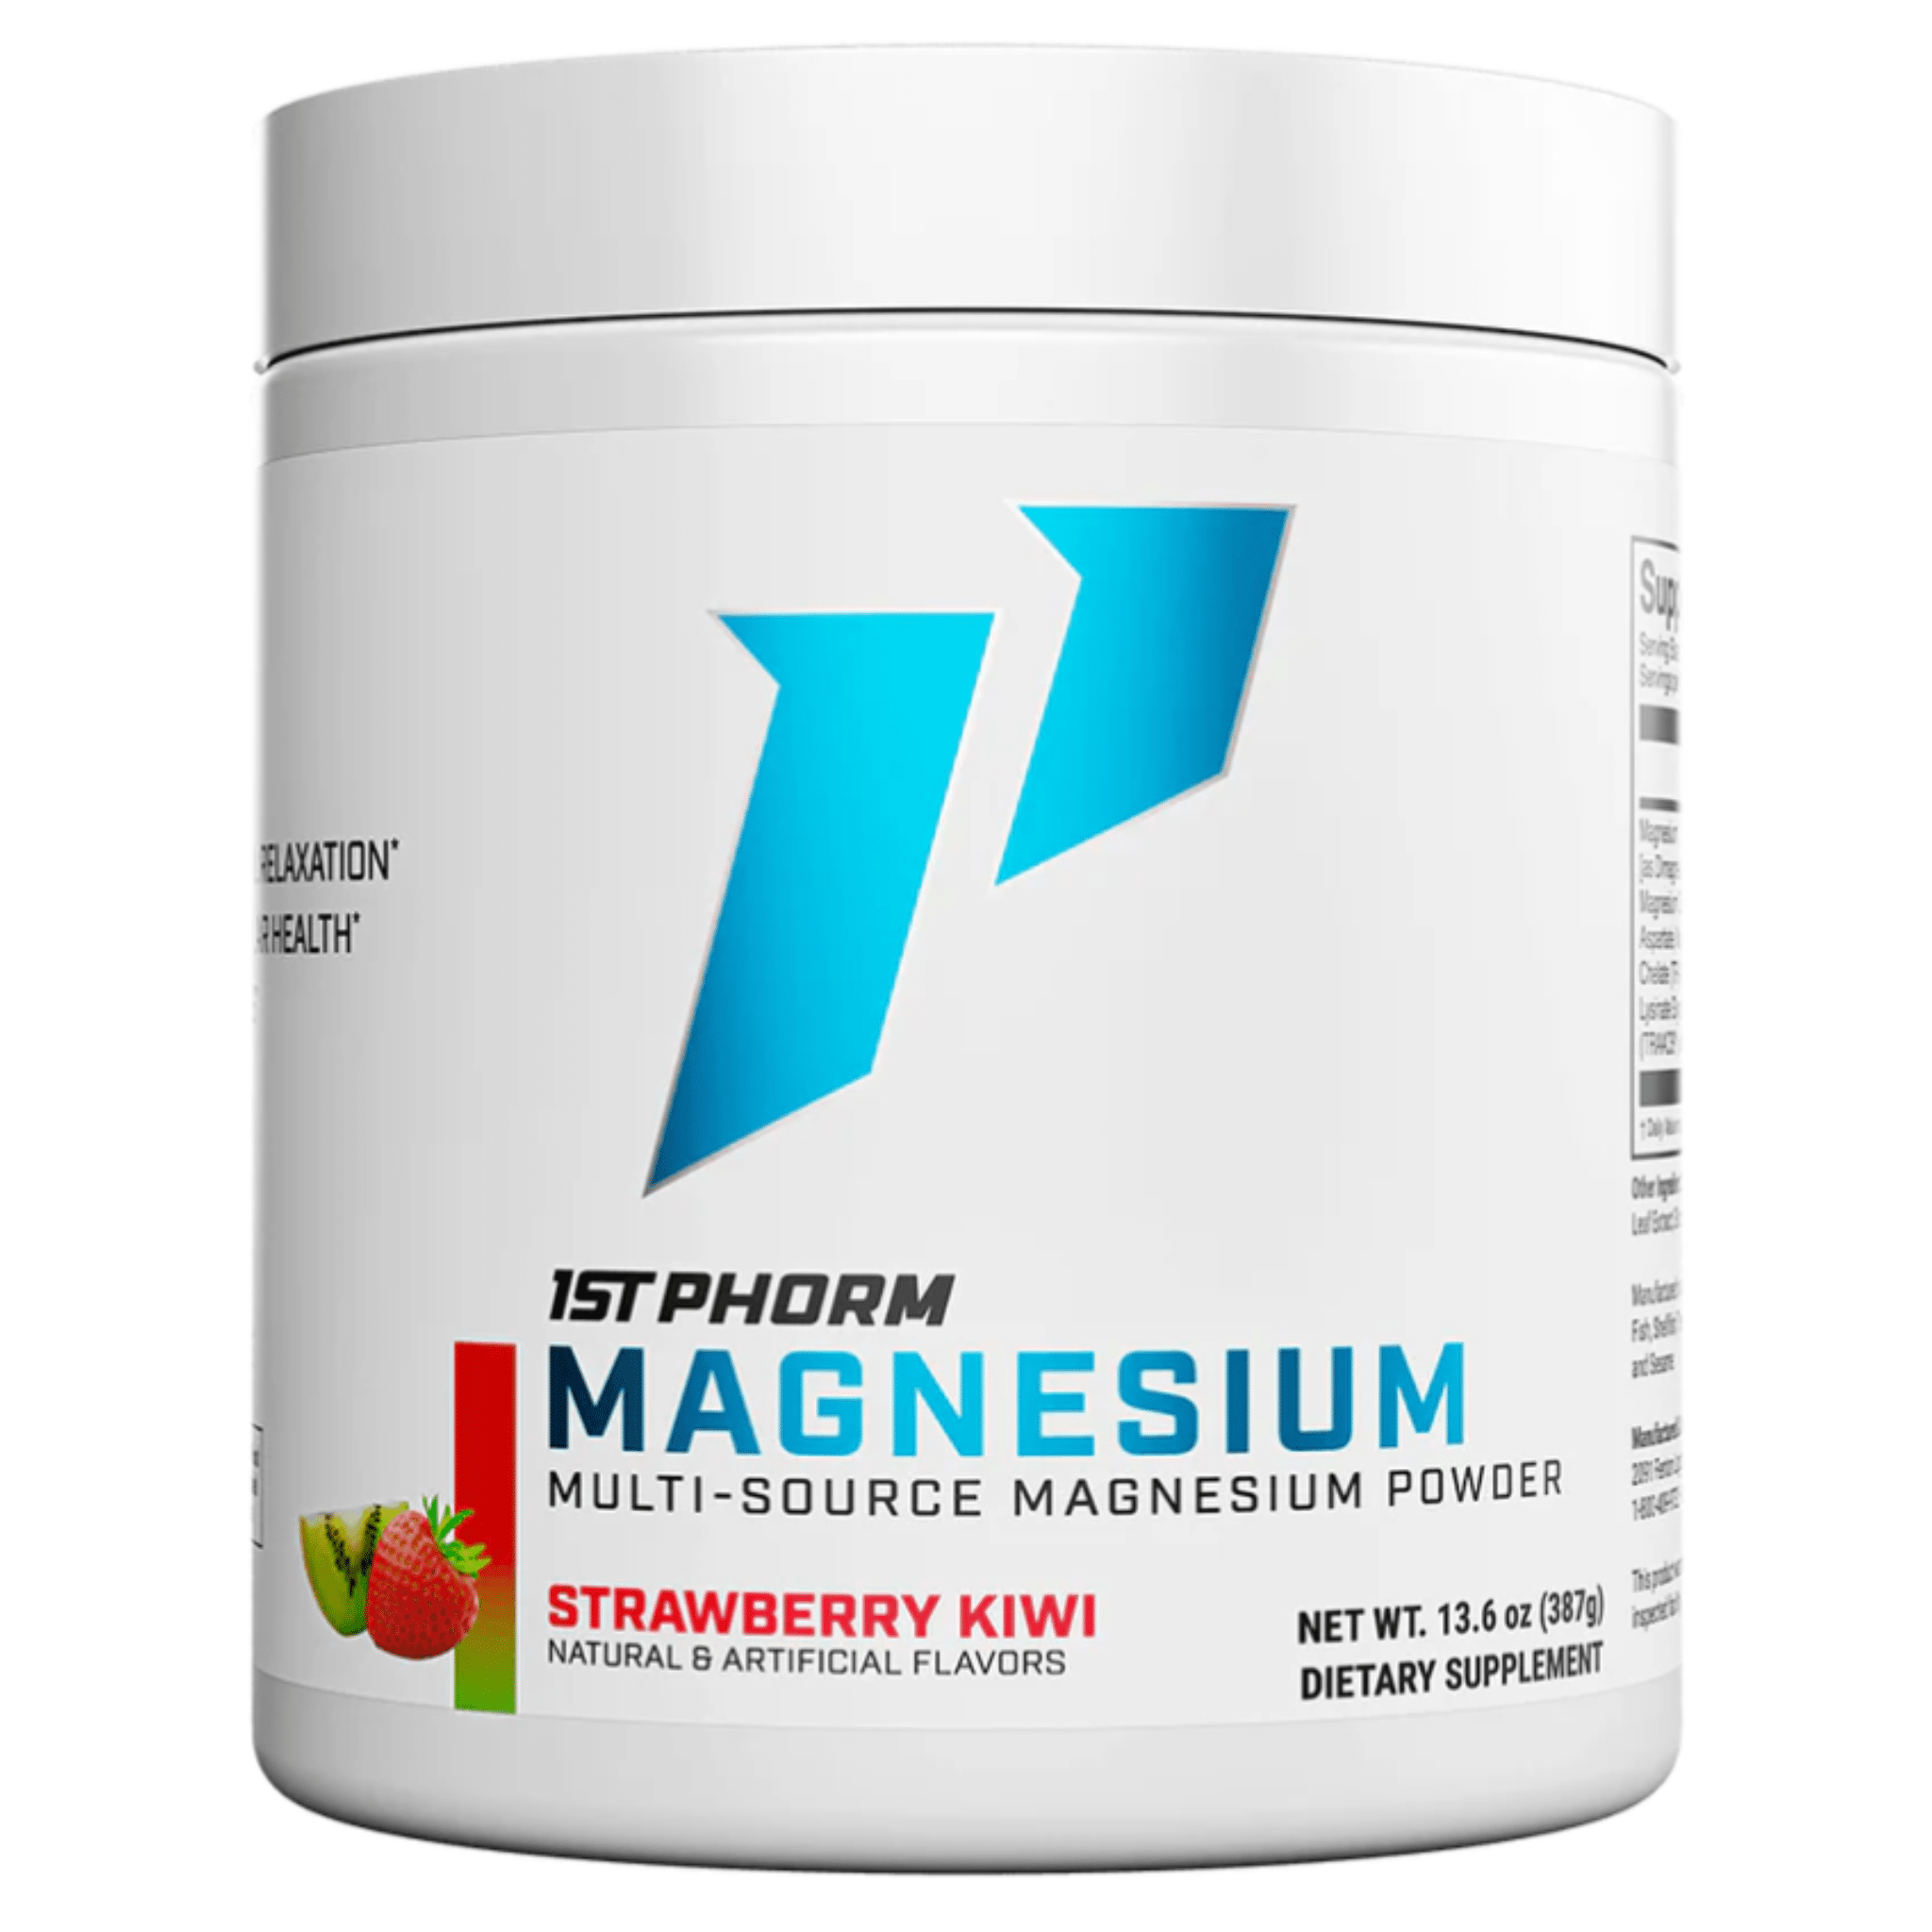 1st Phorm Magnesium